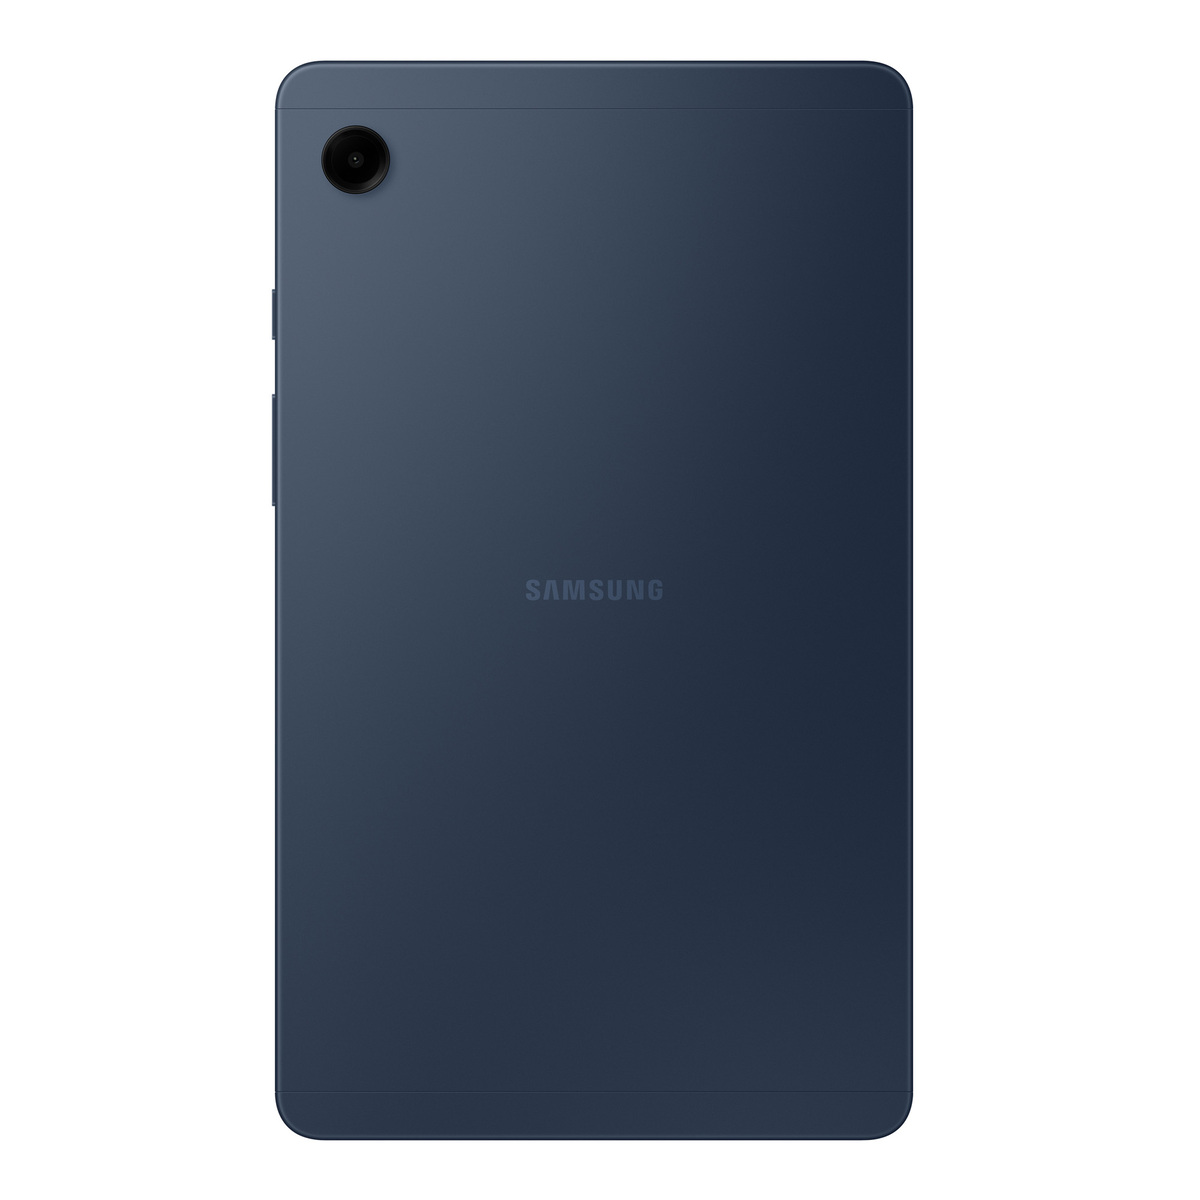 Samsung Tab A9 (4GB RAM, 64GB )